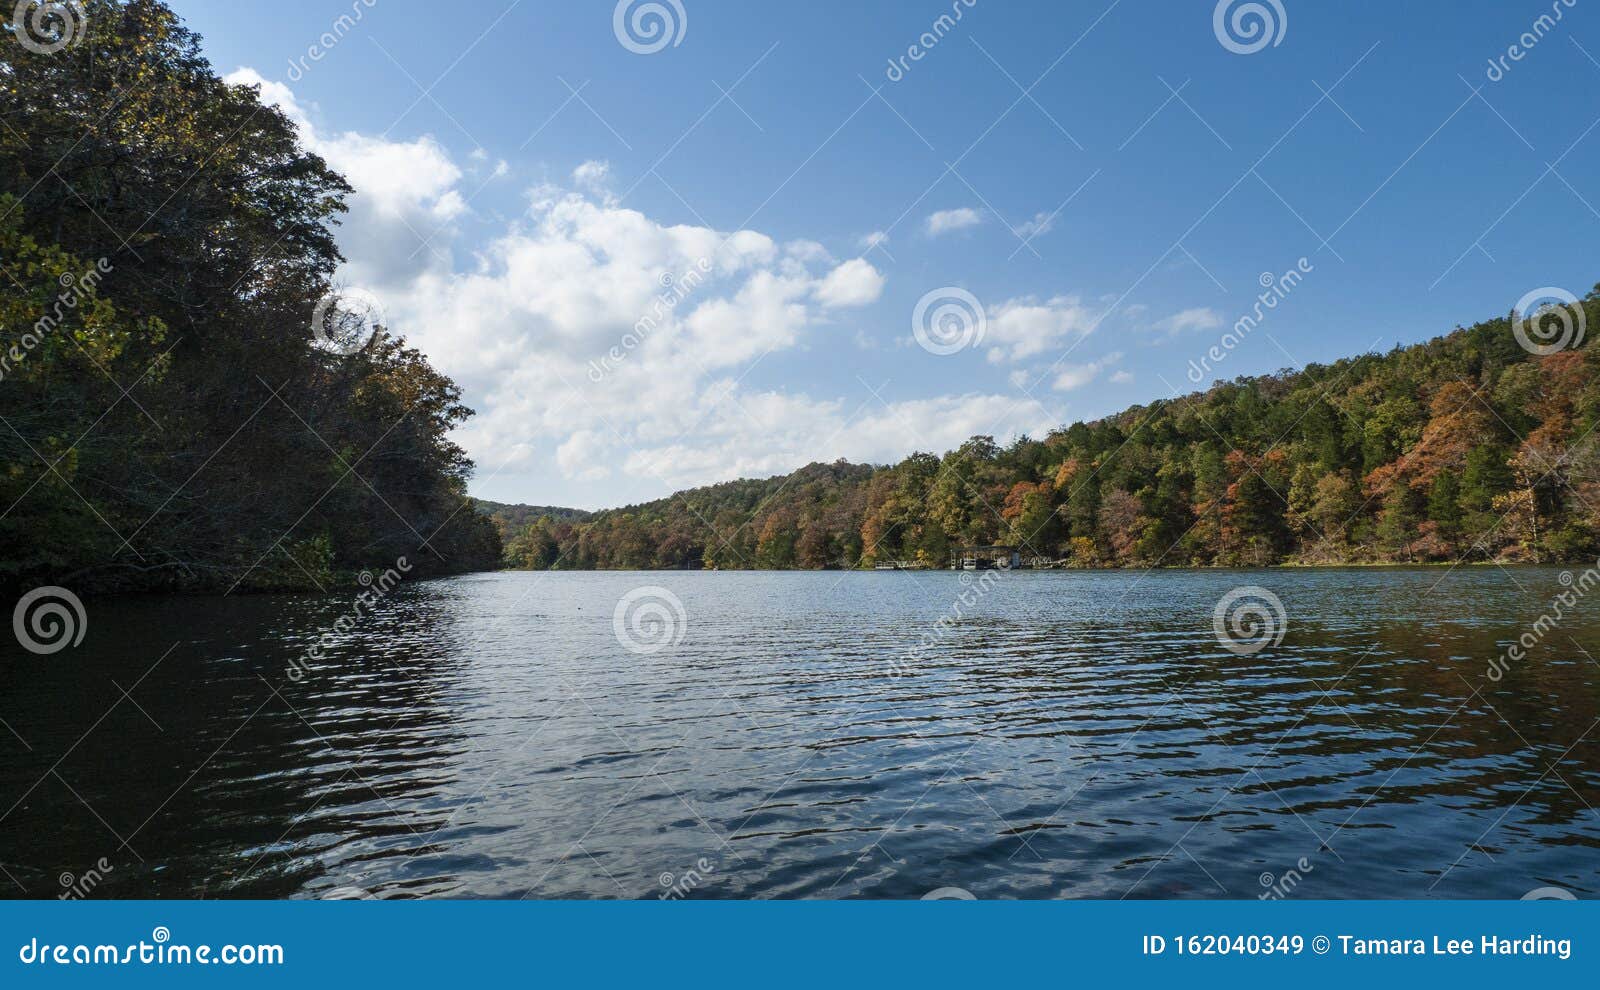 autumn in the ozark mountains of missouri on the lake